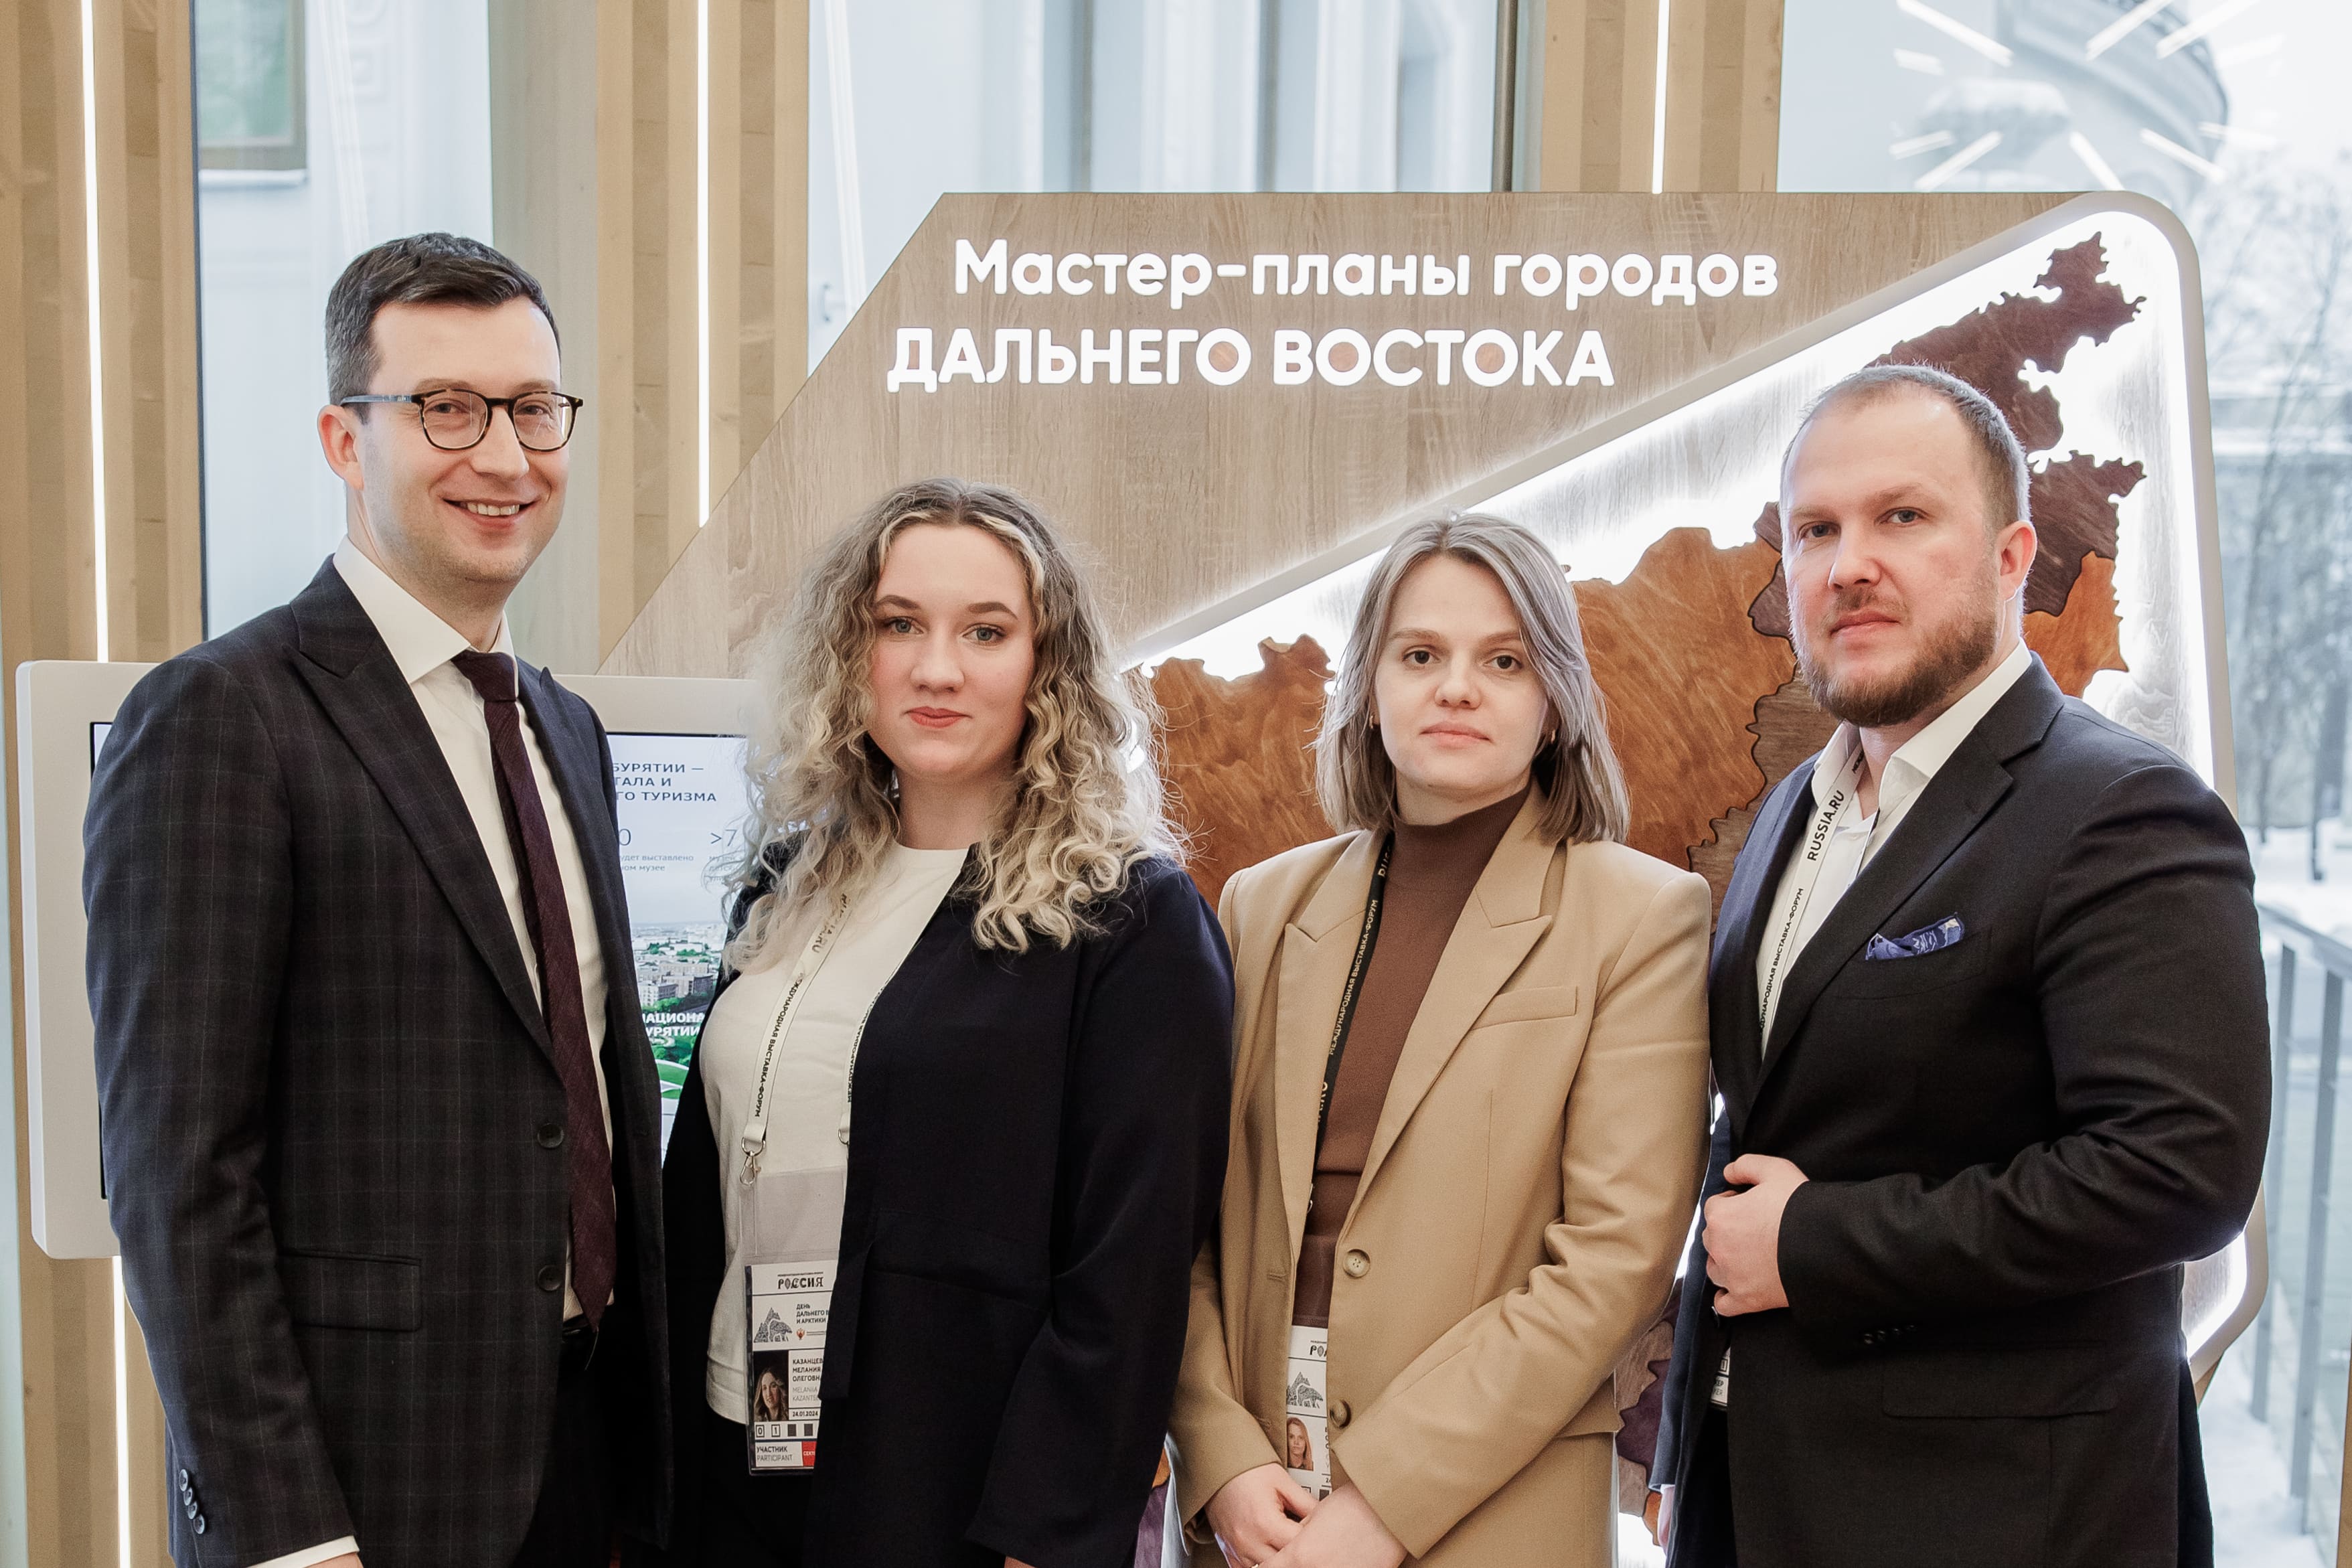 Замдиректора ЦРТ рассказала о работе над амурскими мастер-планами на выставке «Россия»